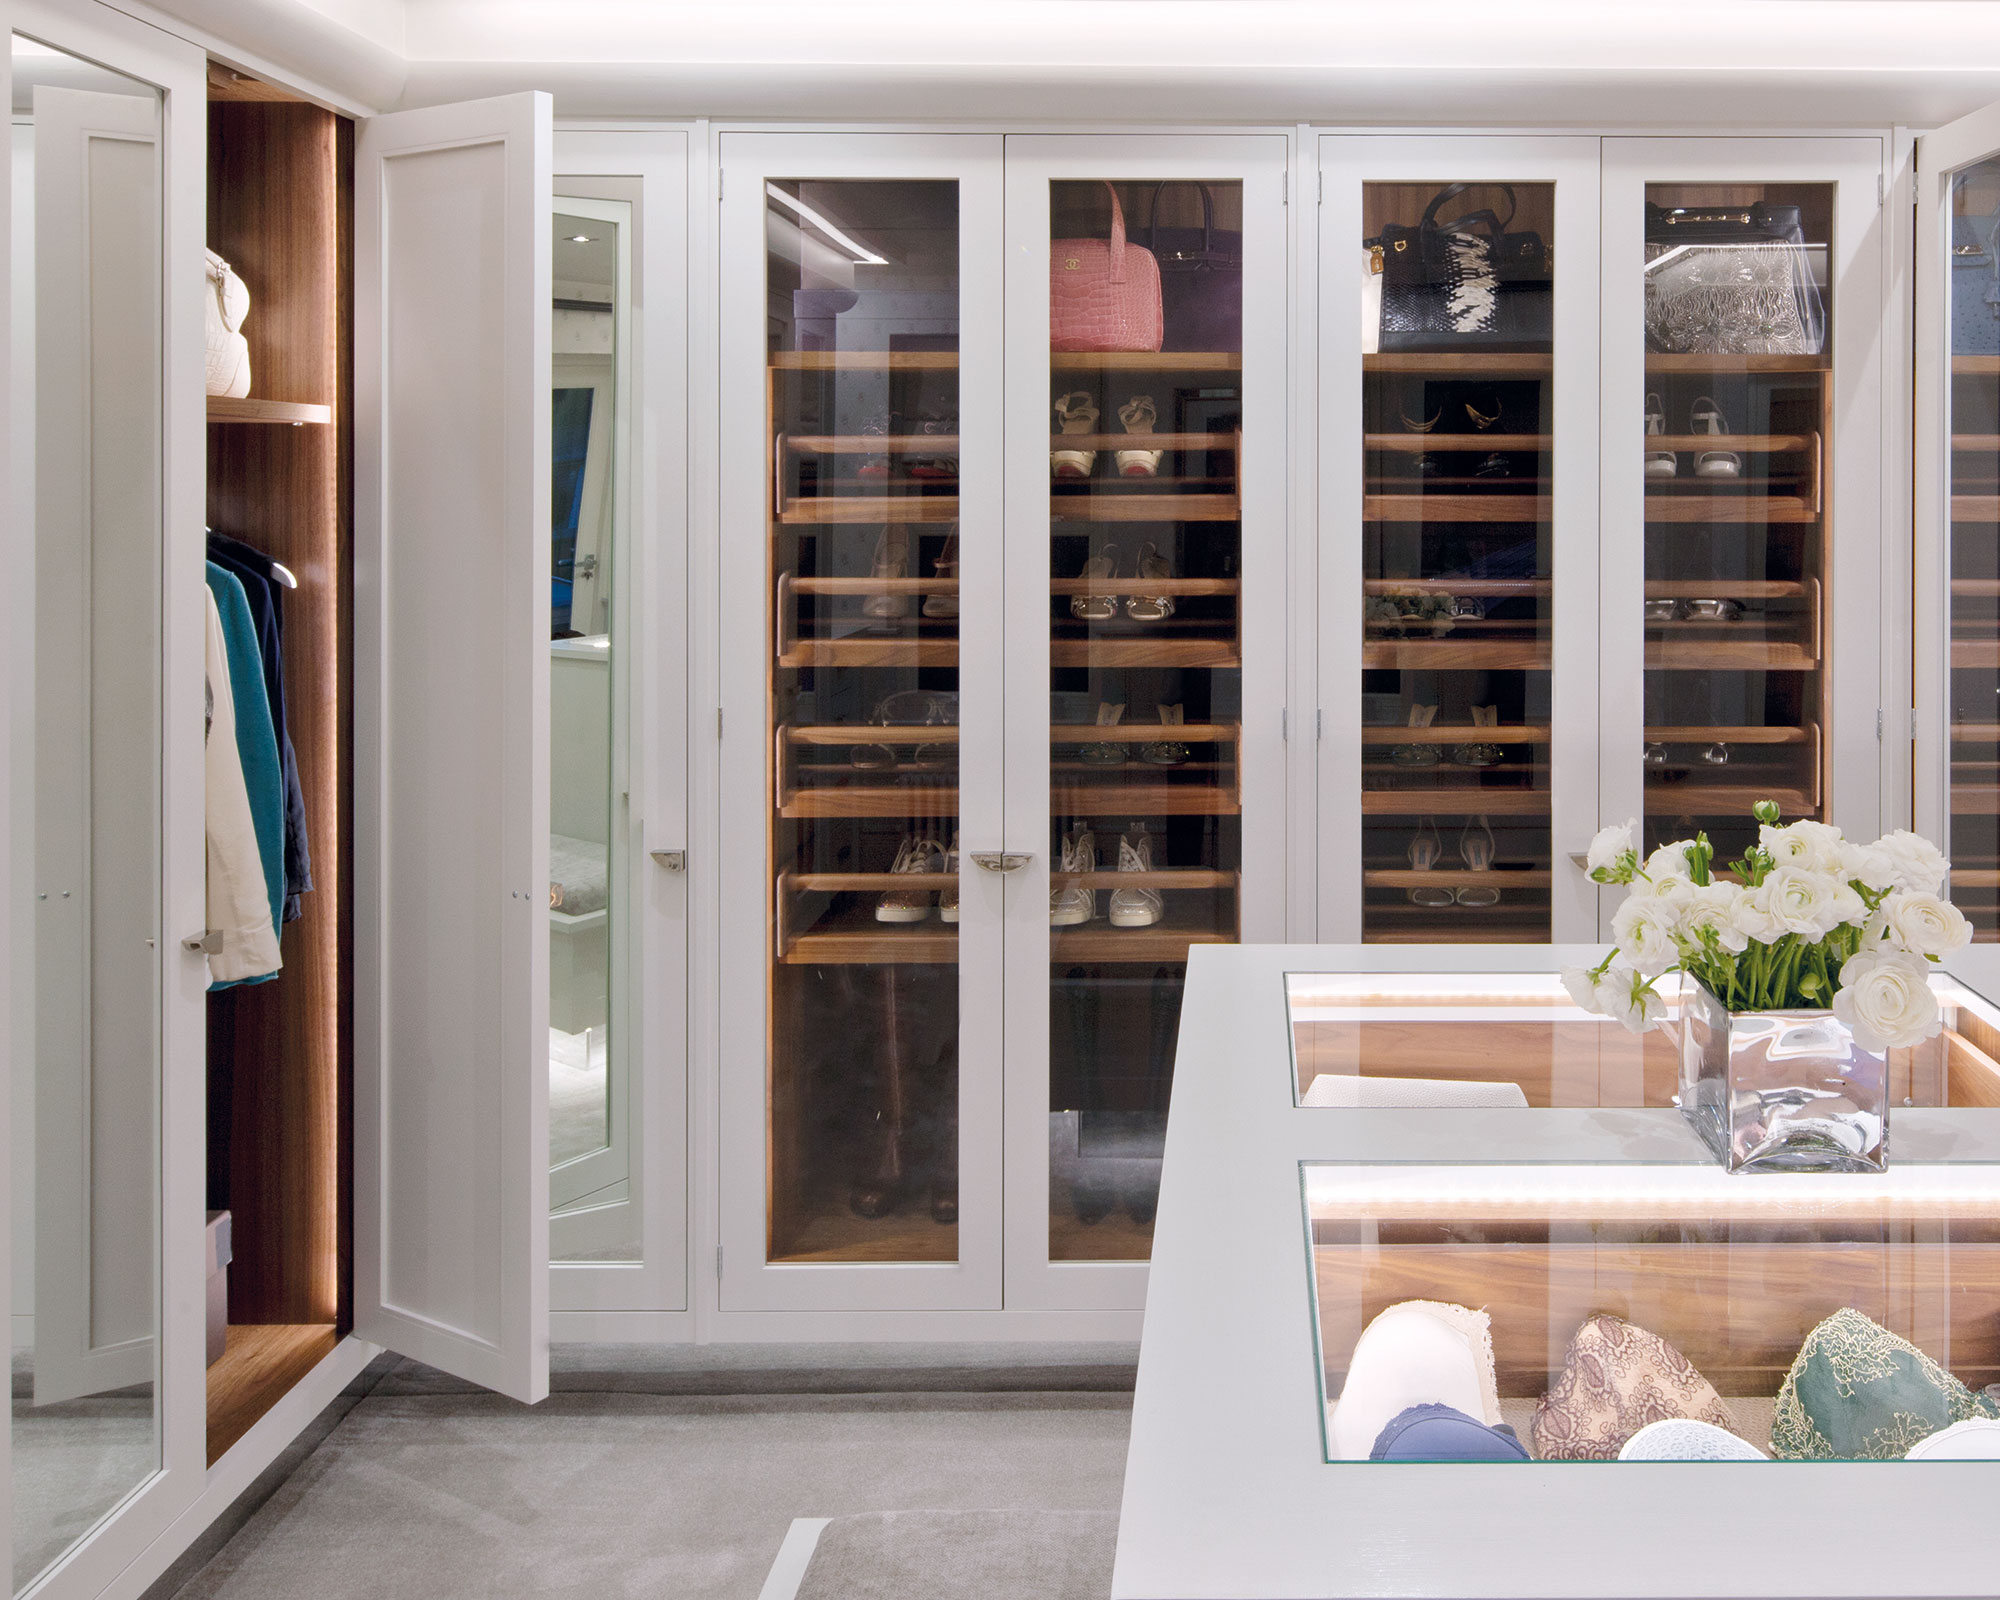 15 Best Linen Closet Organization Ideas - How to Organize a Linen Closet